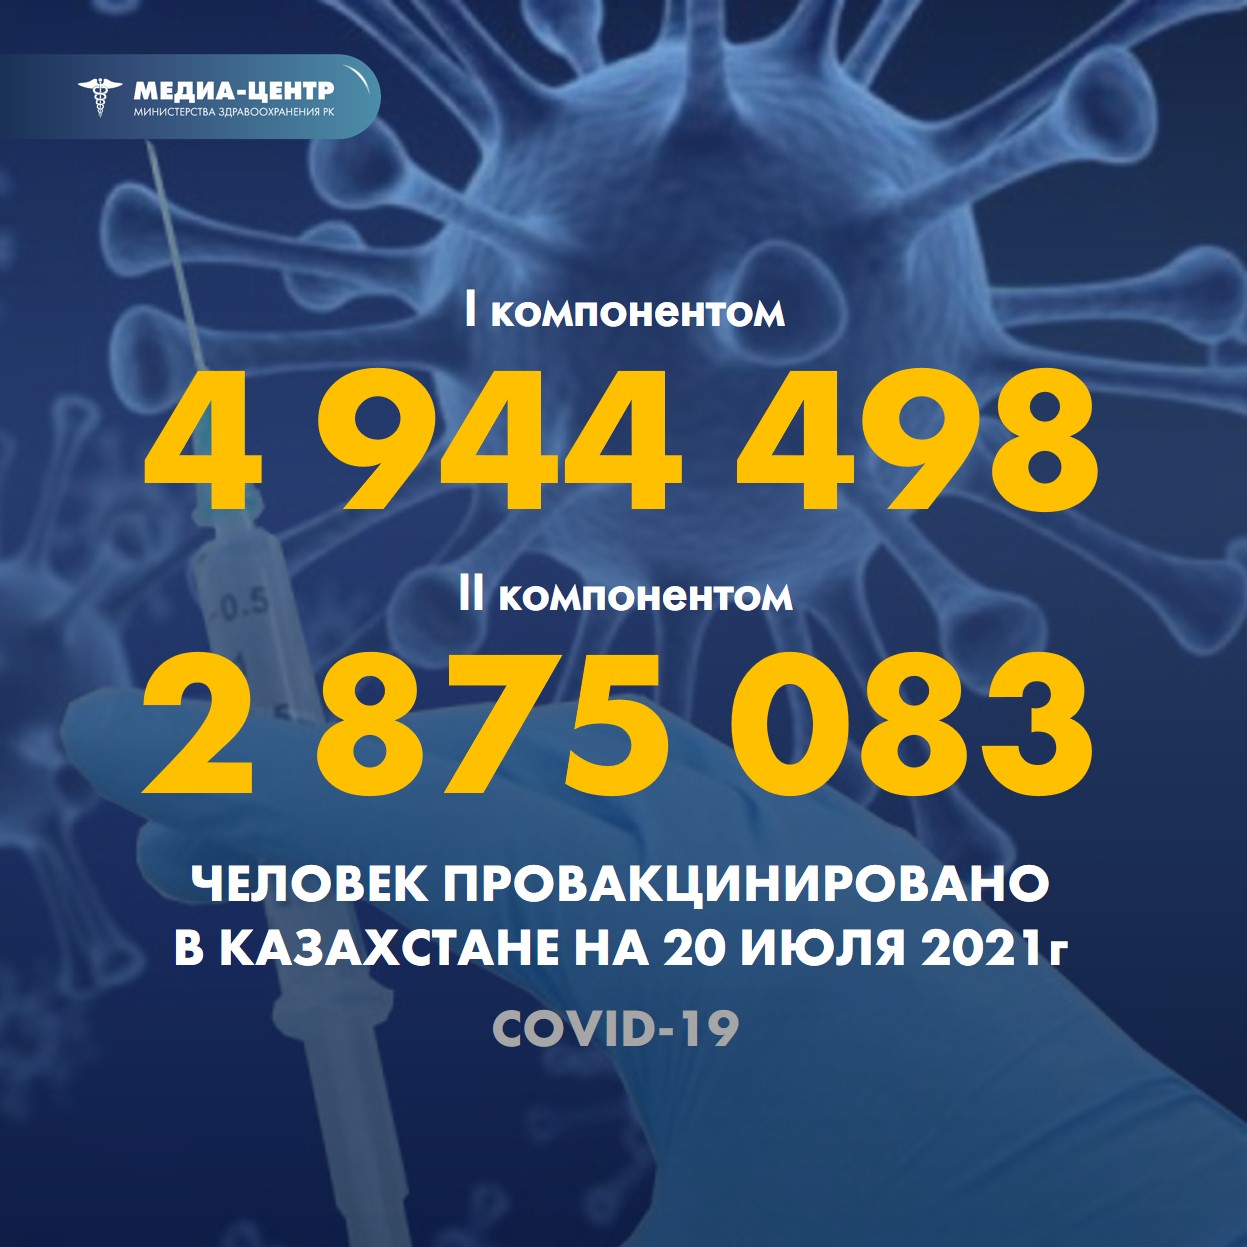 Информация о проведении вакцинации населения против КВИ на 20.07.2021 г. в разрезе регионов